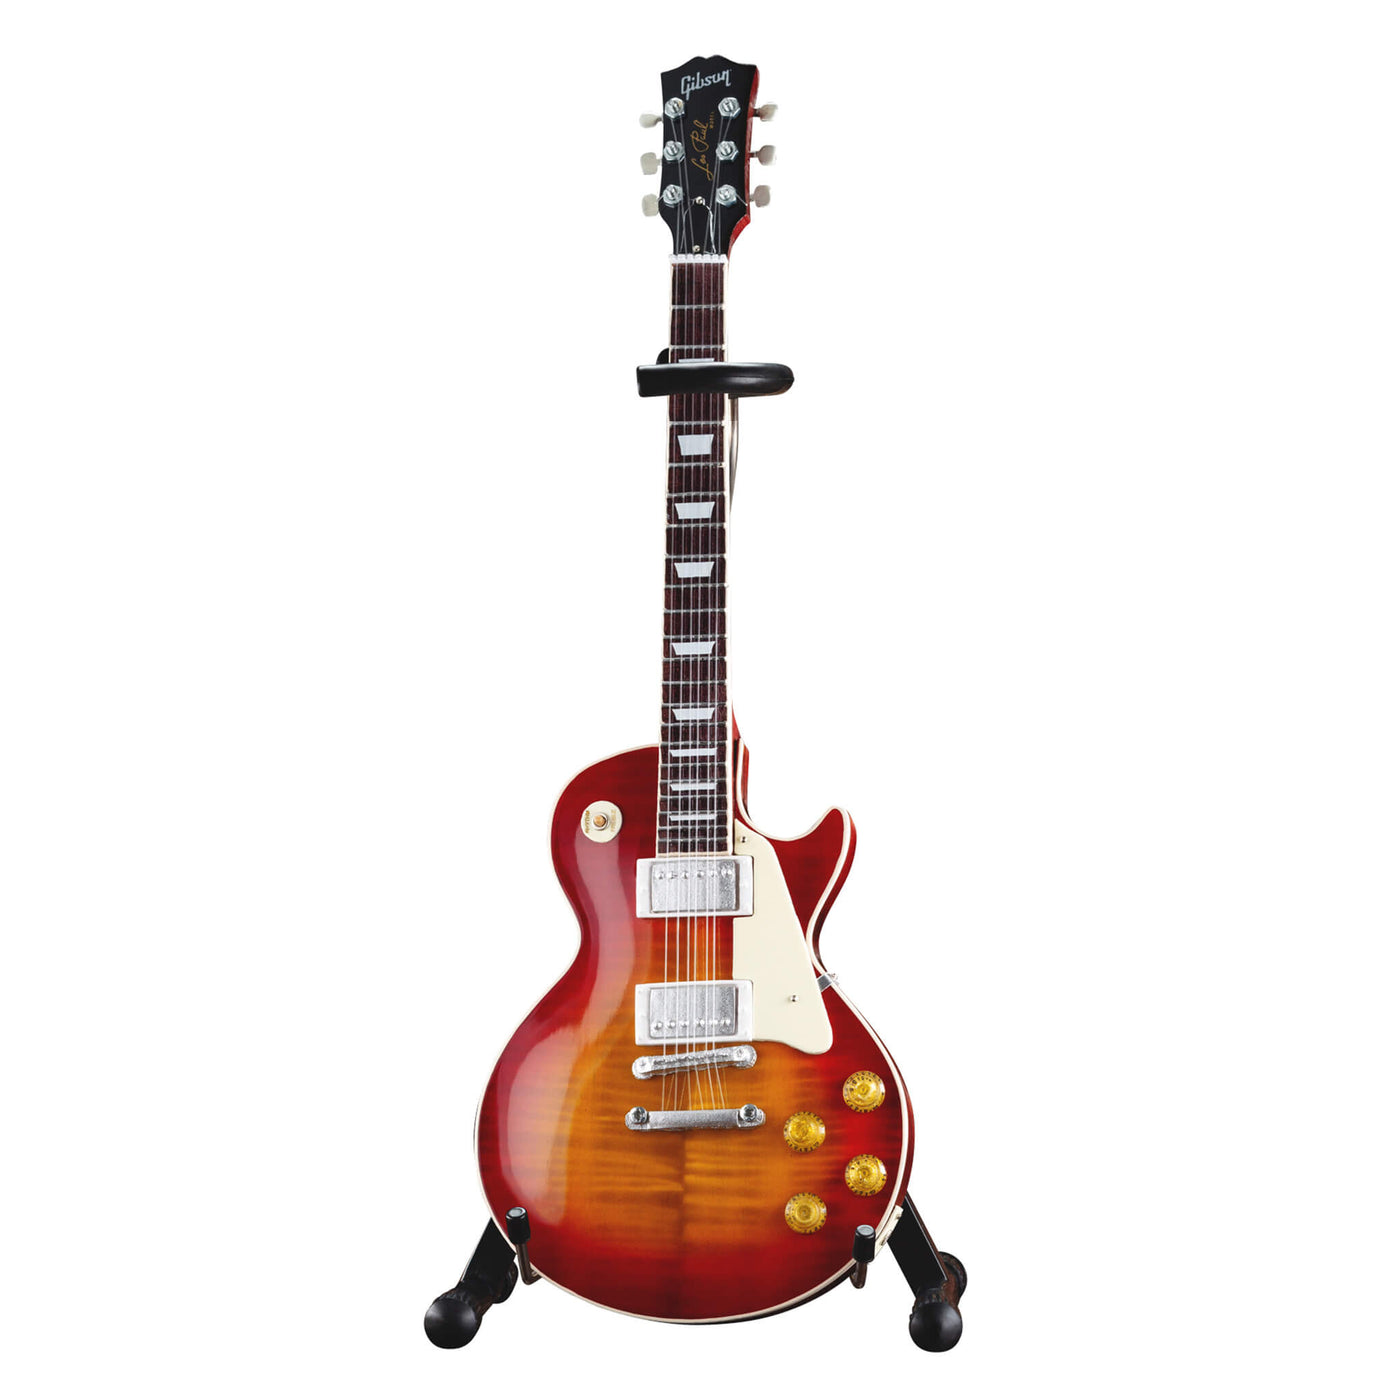 Daniel Steiger Gibson 1959 Les Paul Standard Cherry Sunburst Guitar Model